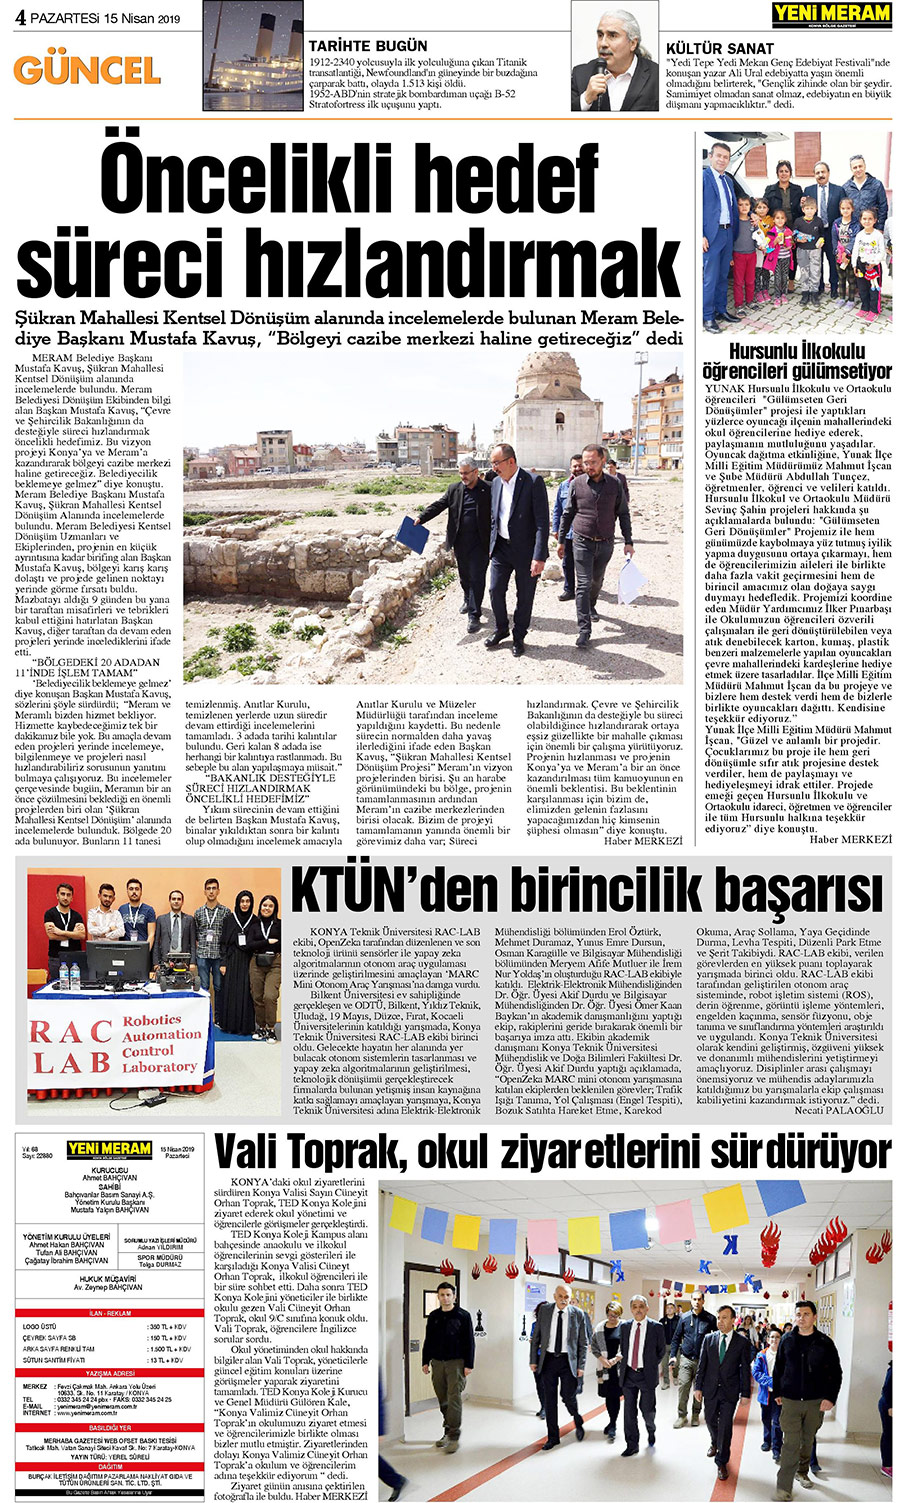 15 Nisan 2019 Yeni Meram Gazetesi